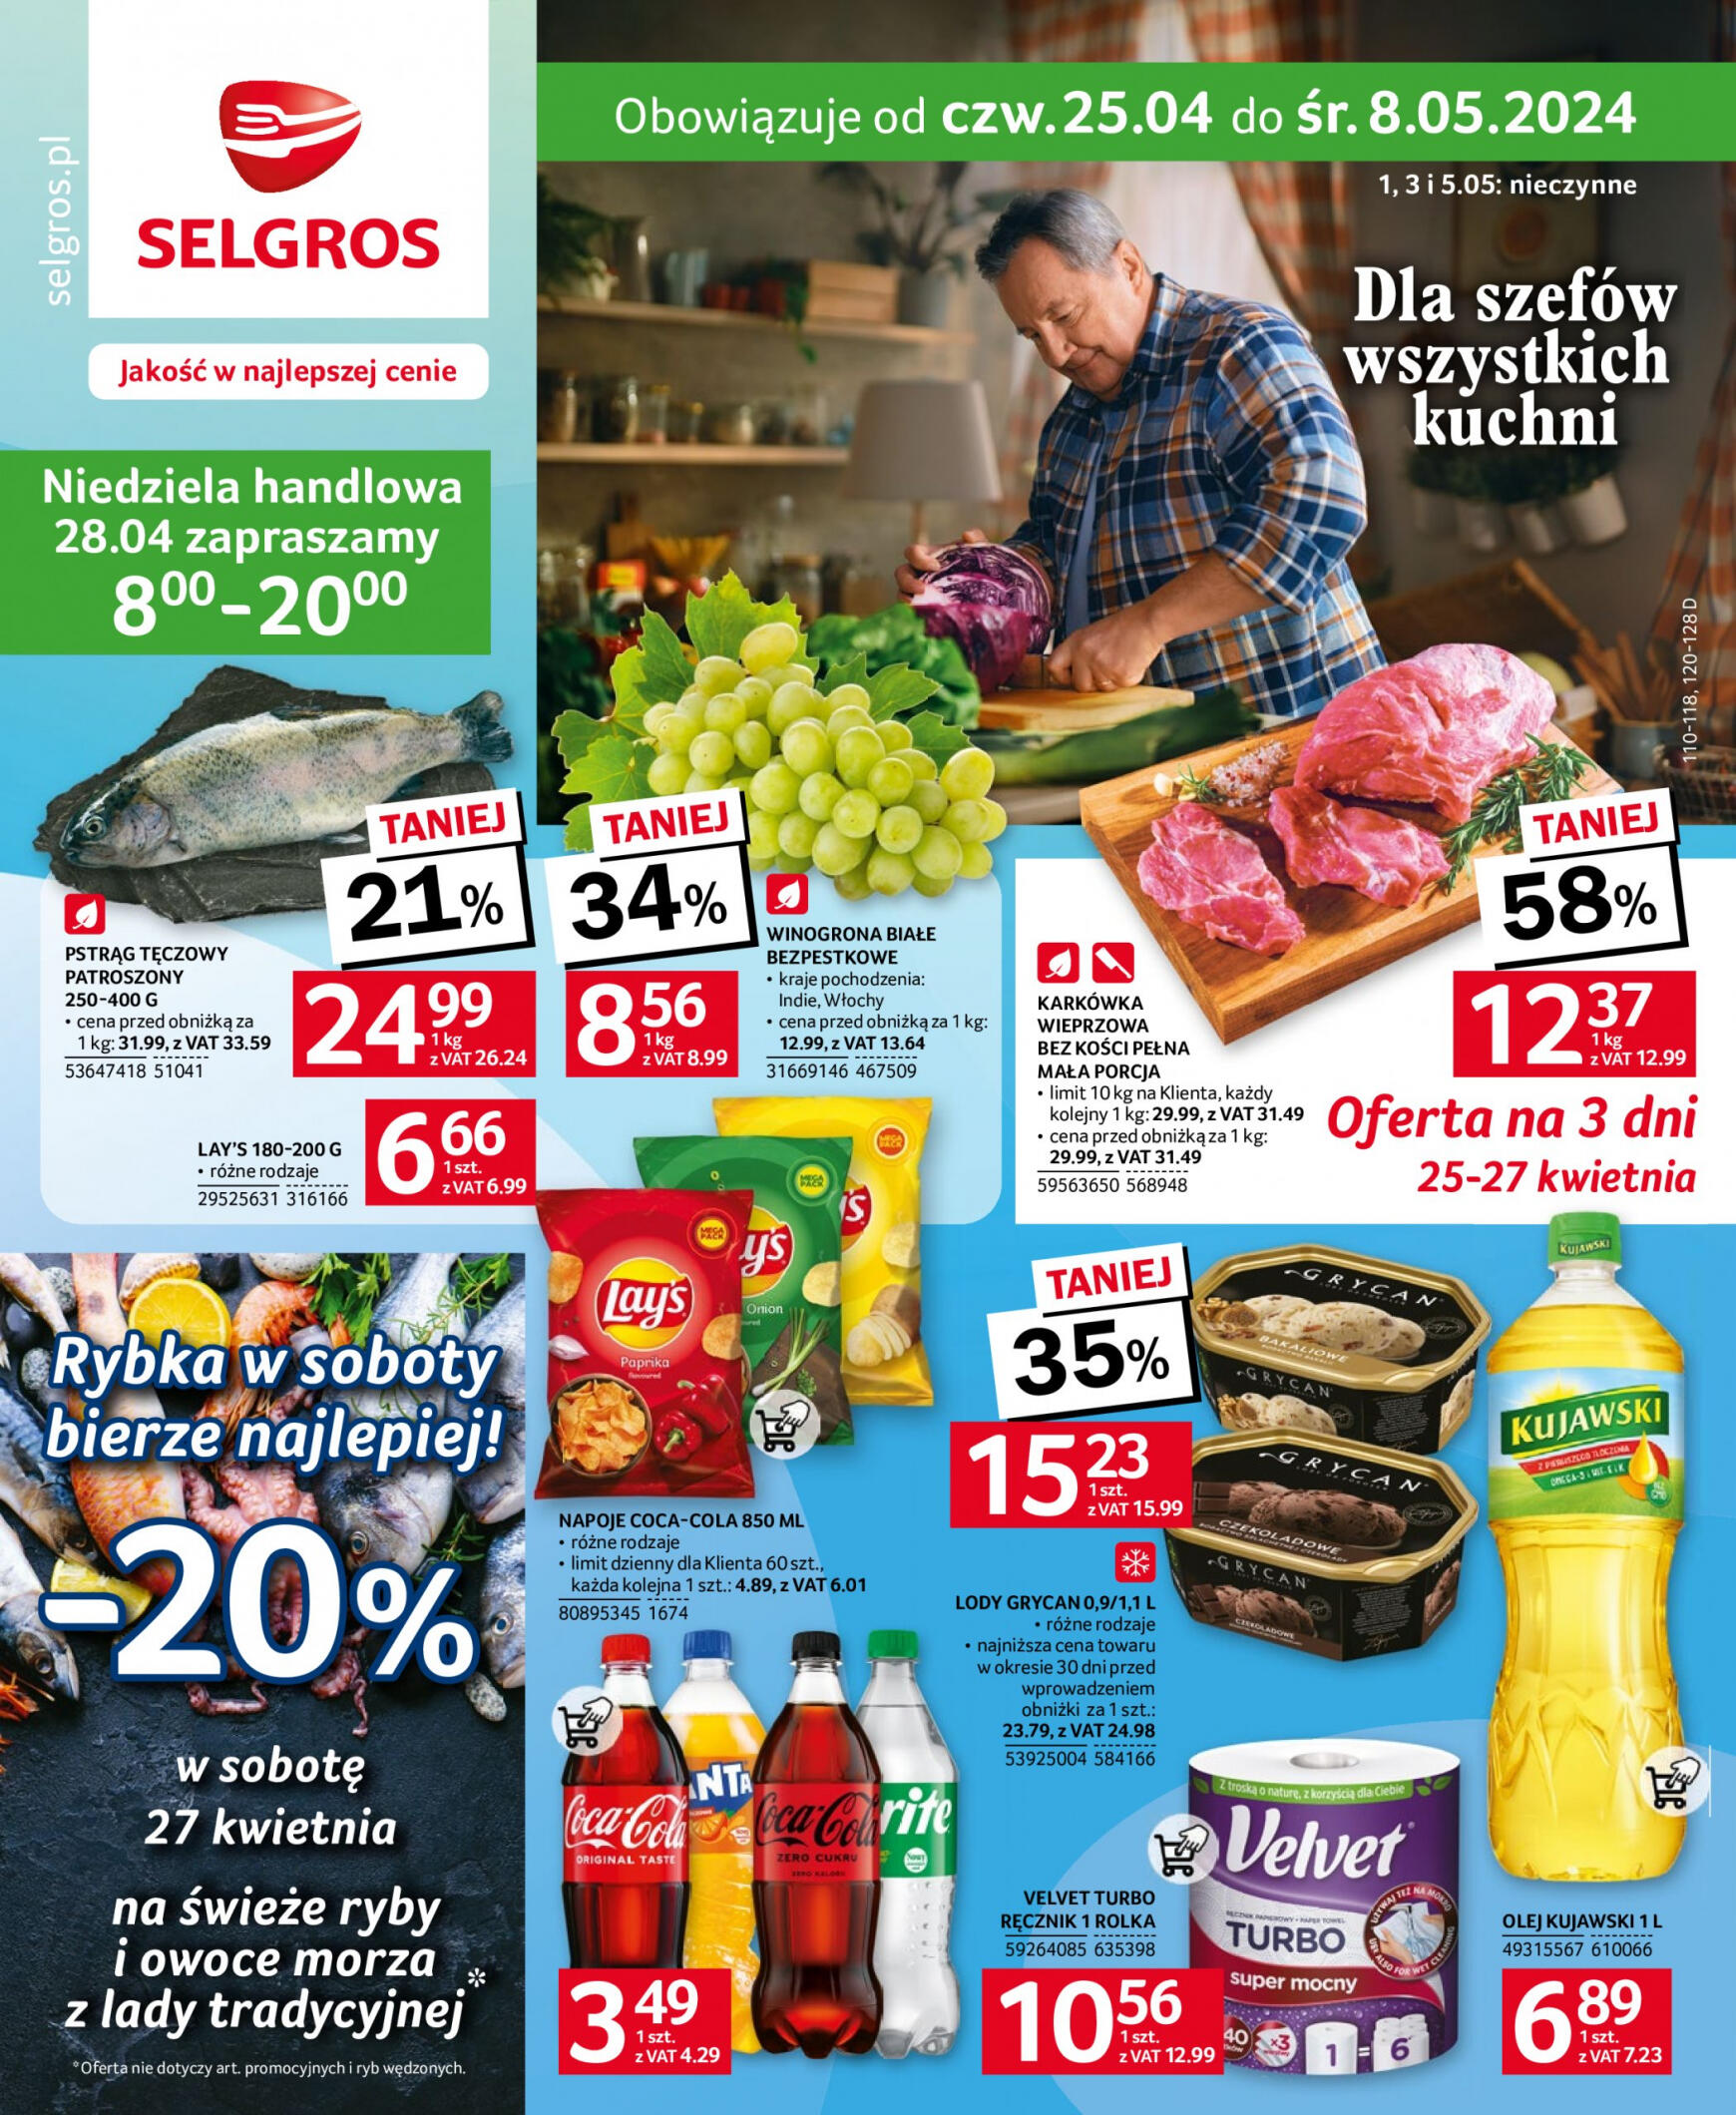 selgros - Selgros - Oferta spożywcza gazetka aktualna ważna od 25.04. - 05.05. - page: 1